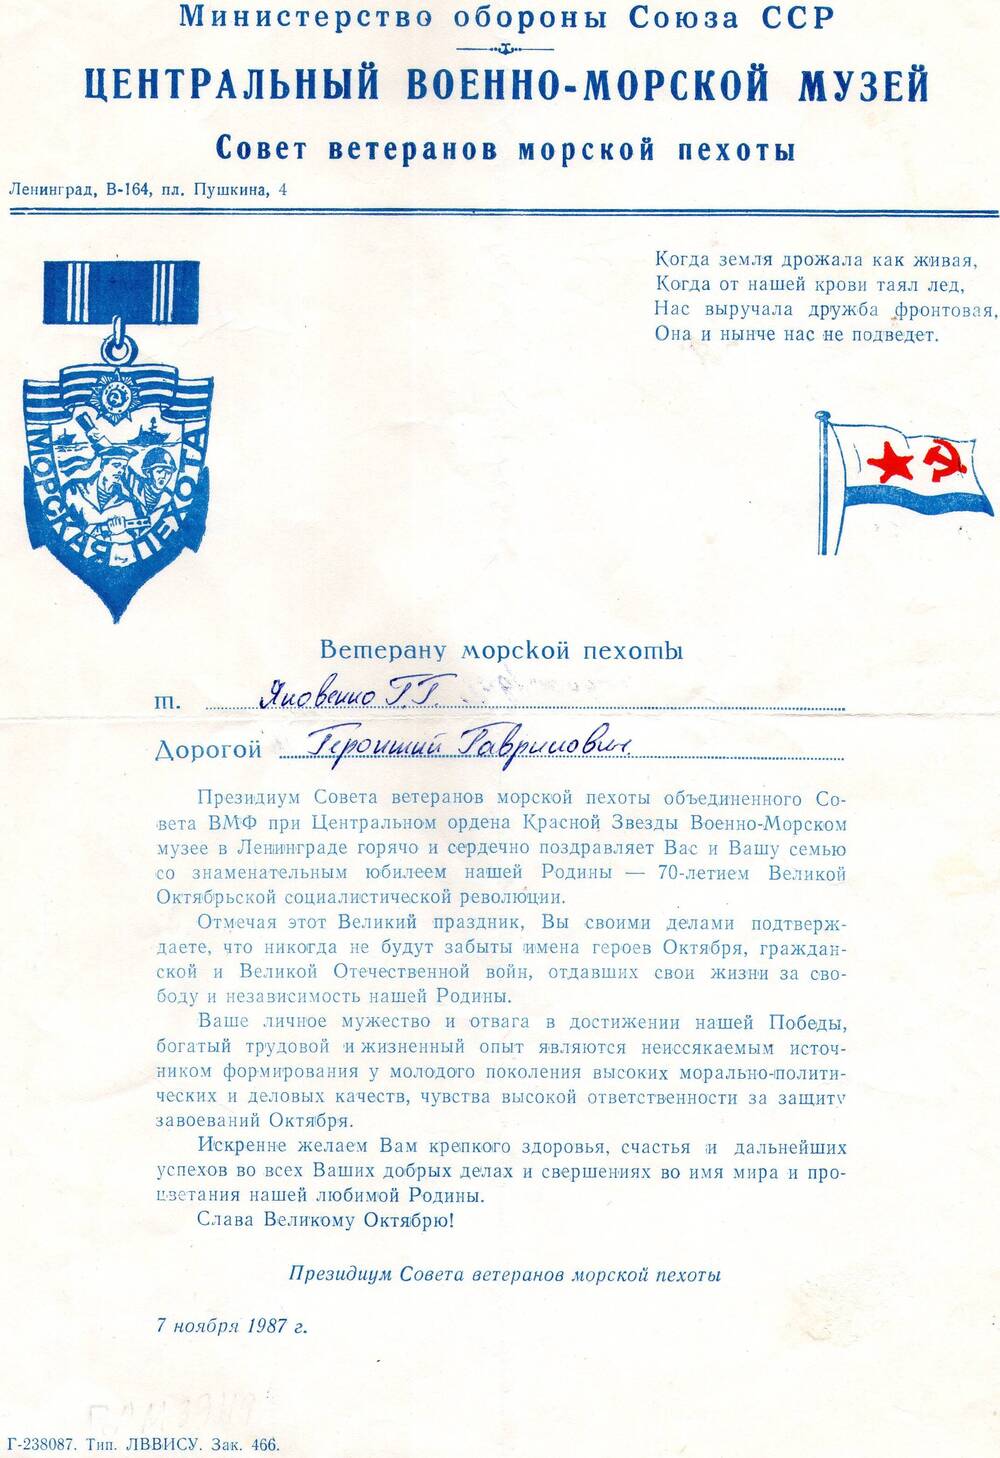 Поздравление с 70-летием Октябрьской революции на имя Яковенко Г.Г.